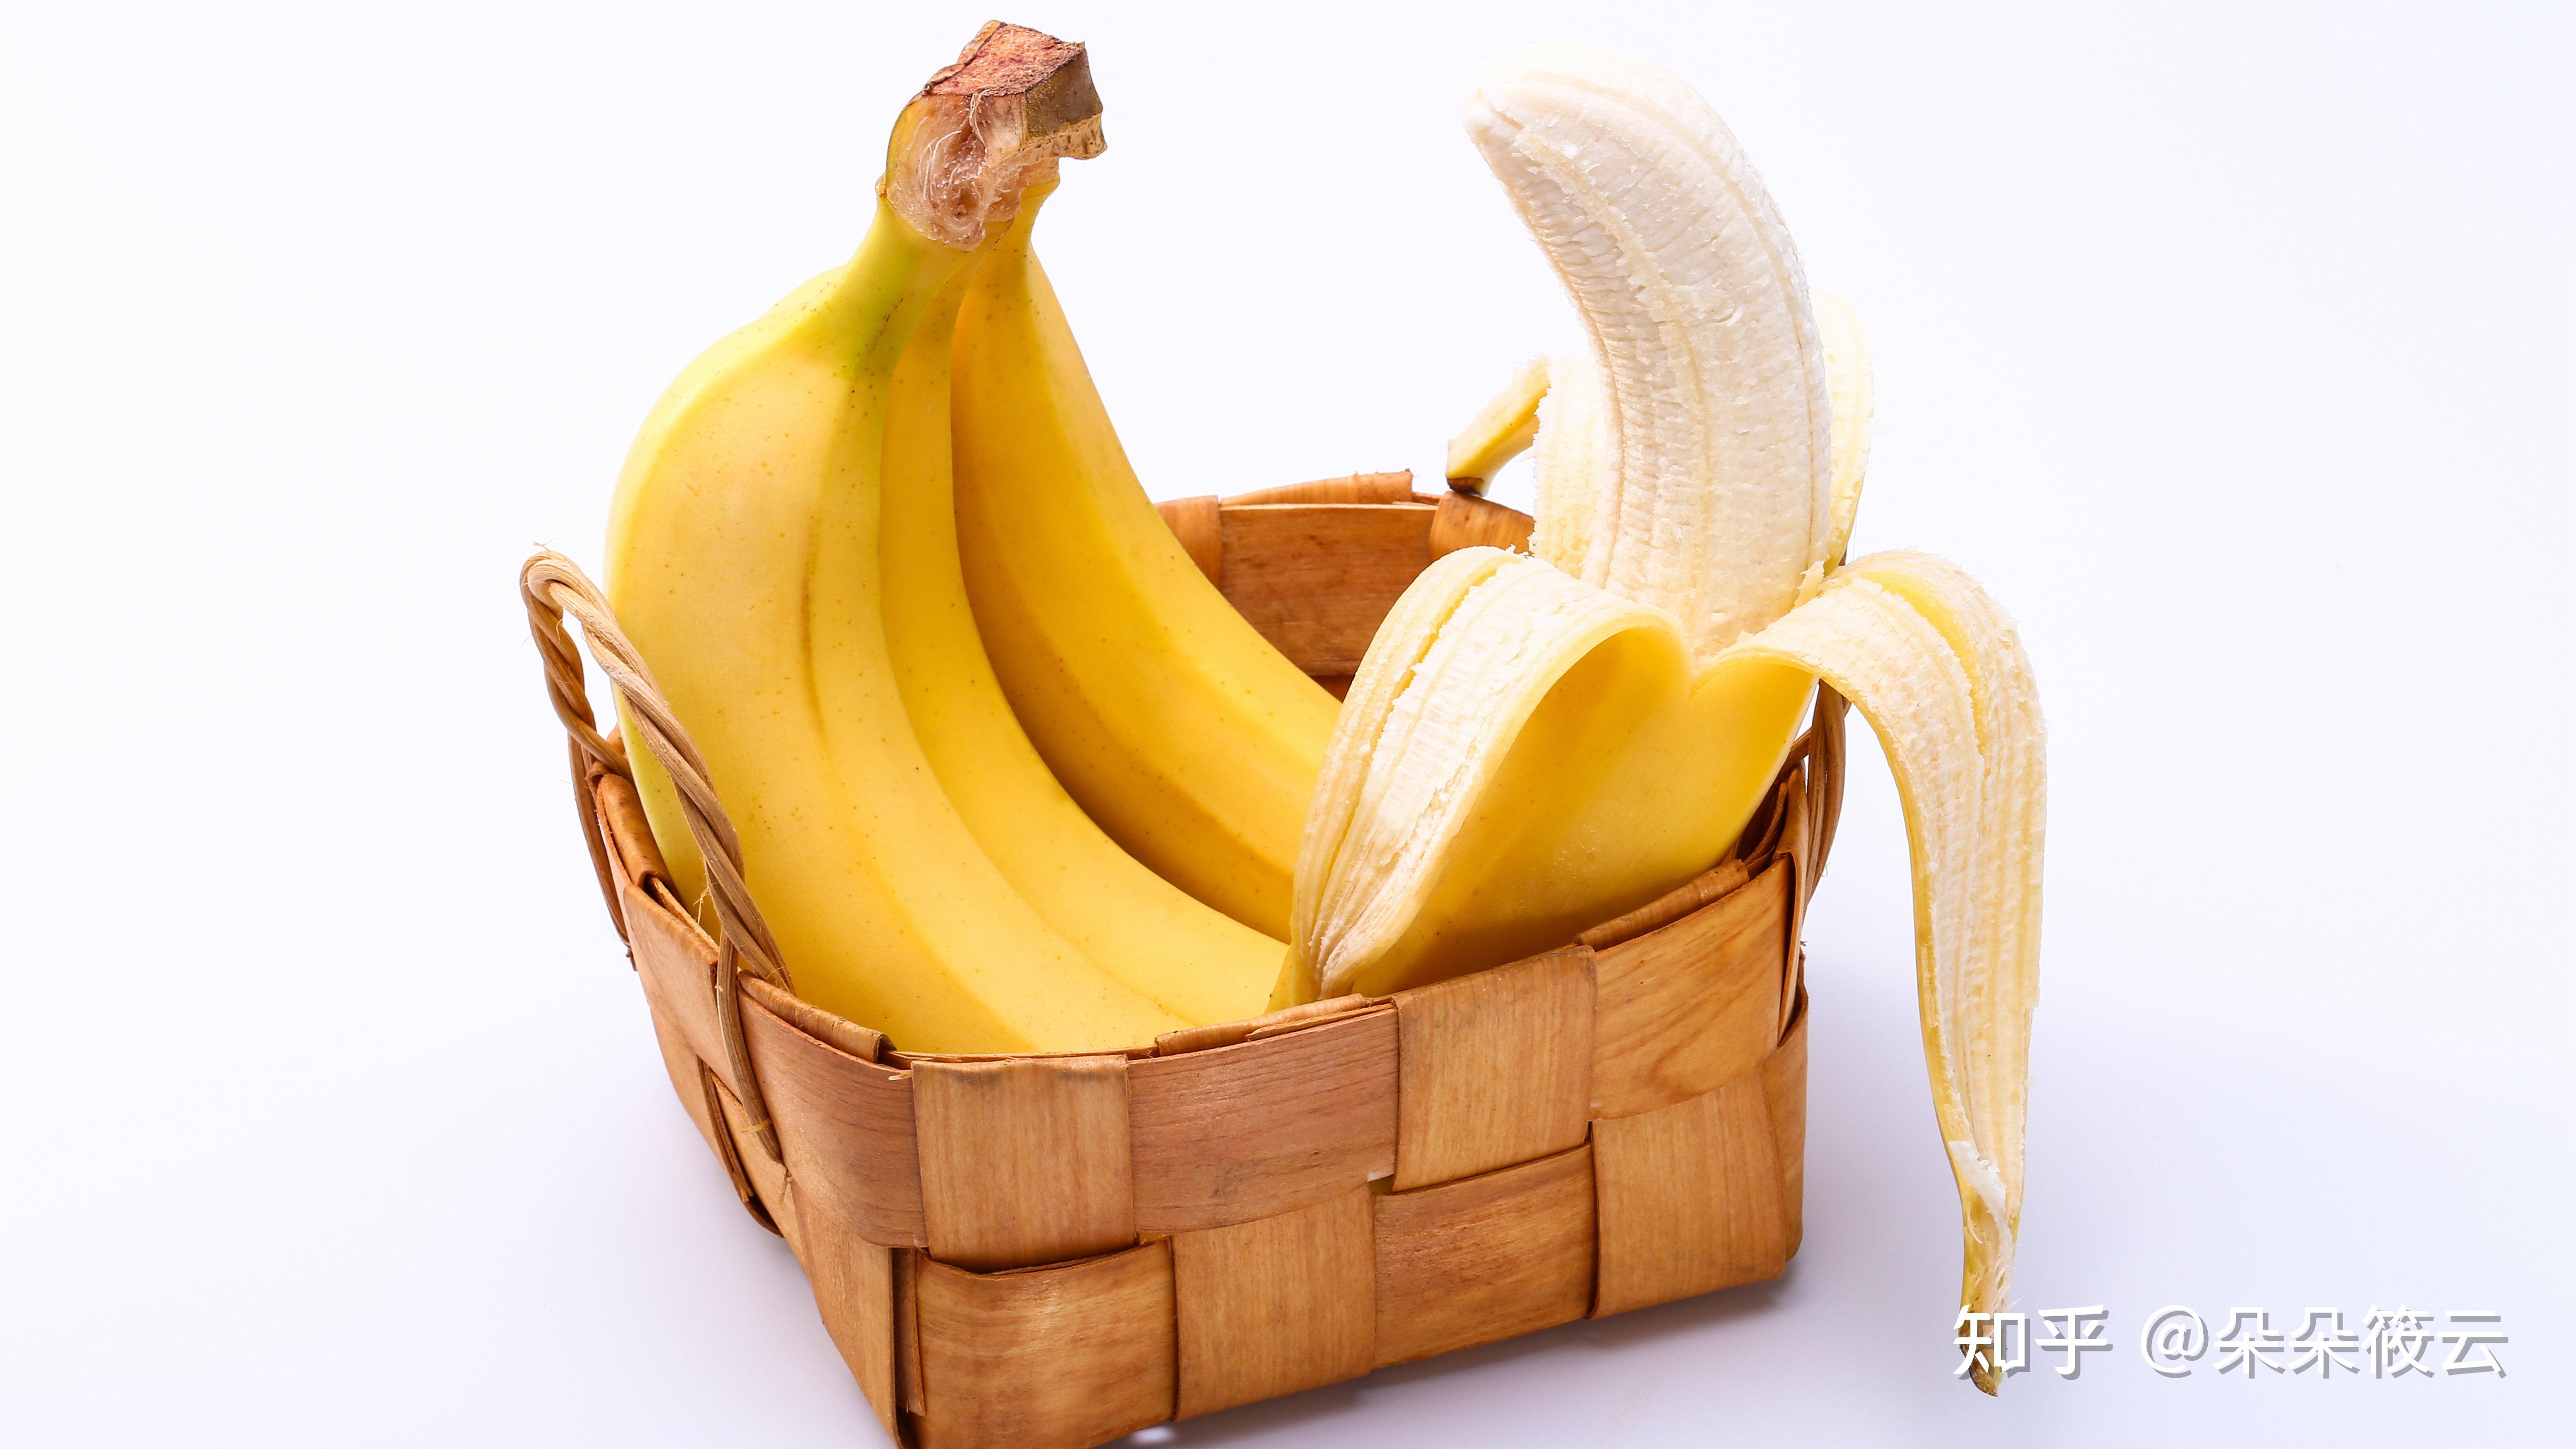 抗焦虑的食物还包括一种大家比较熟悉的食物,那就是香蕉,香蕉含有一